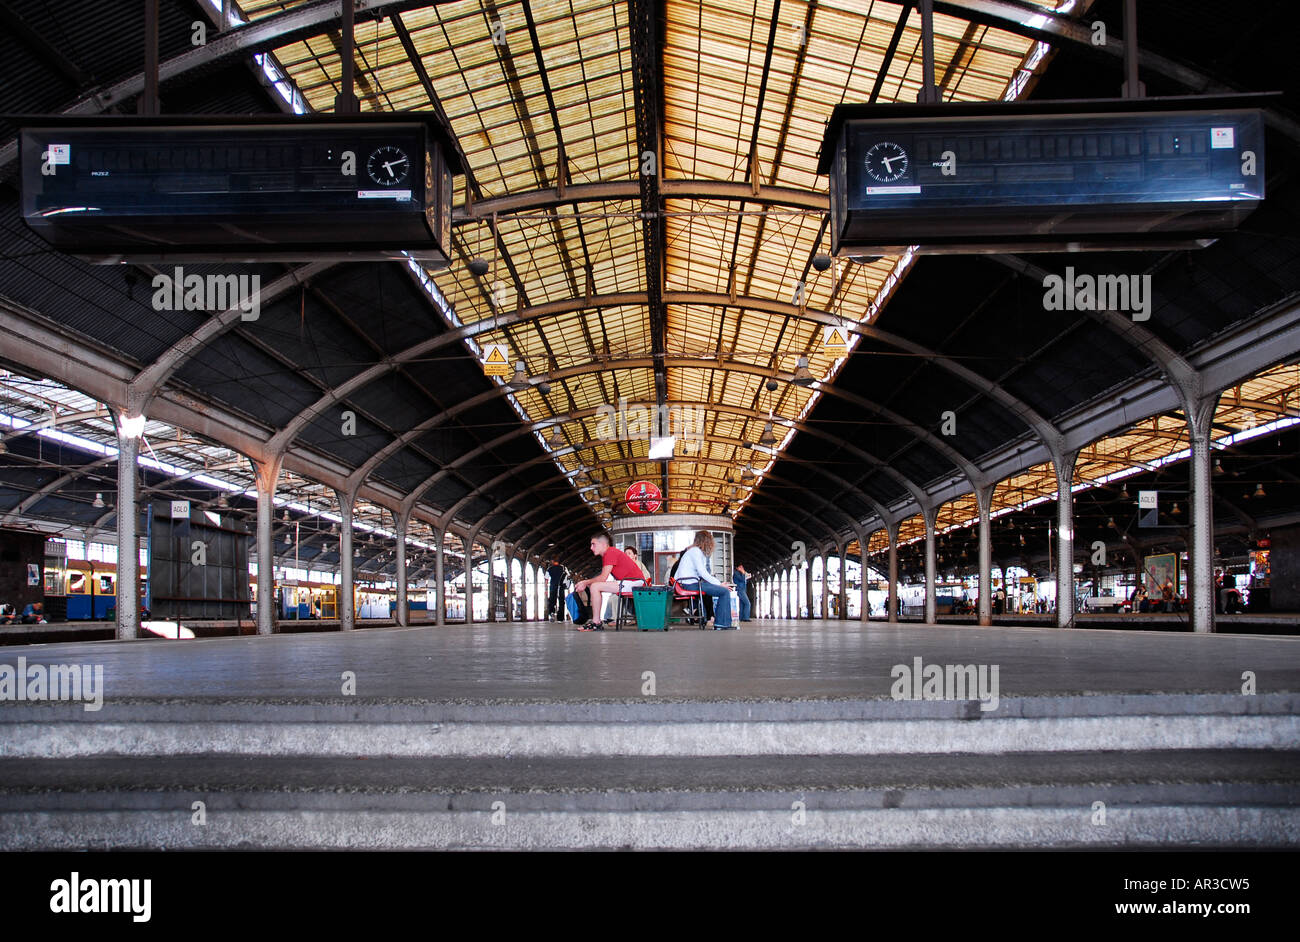 Wraclaw stazione ferroviaria piattaforma ripresa a livello del suolo con i passeggeri in attesa di treni Foto Stock